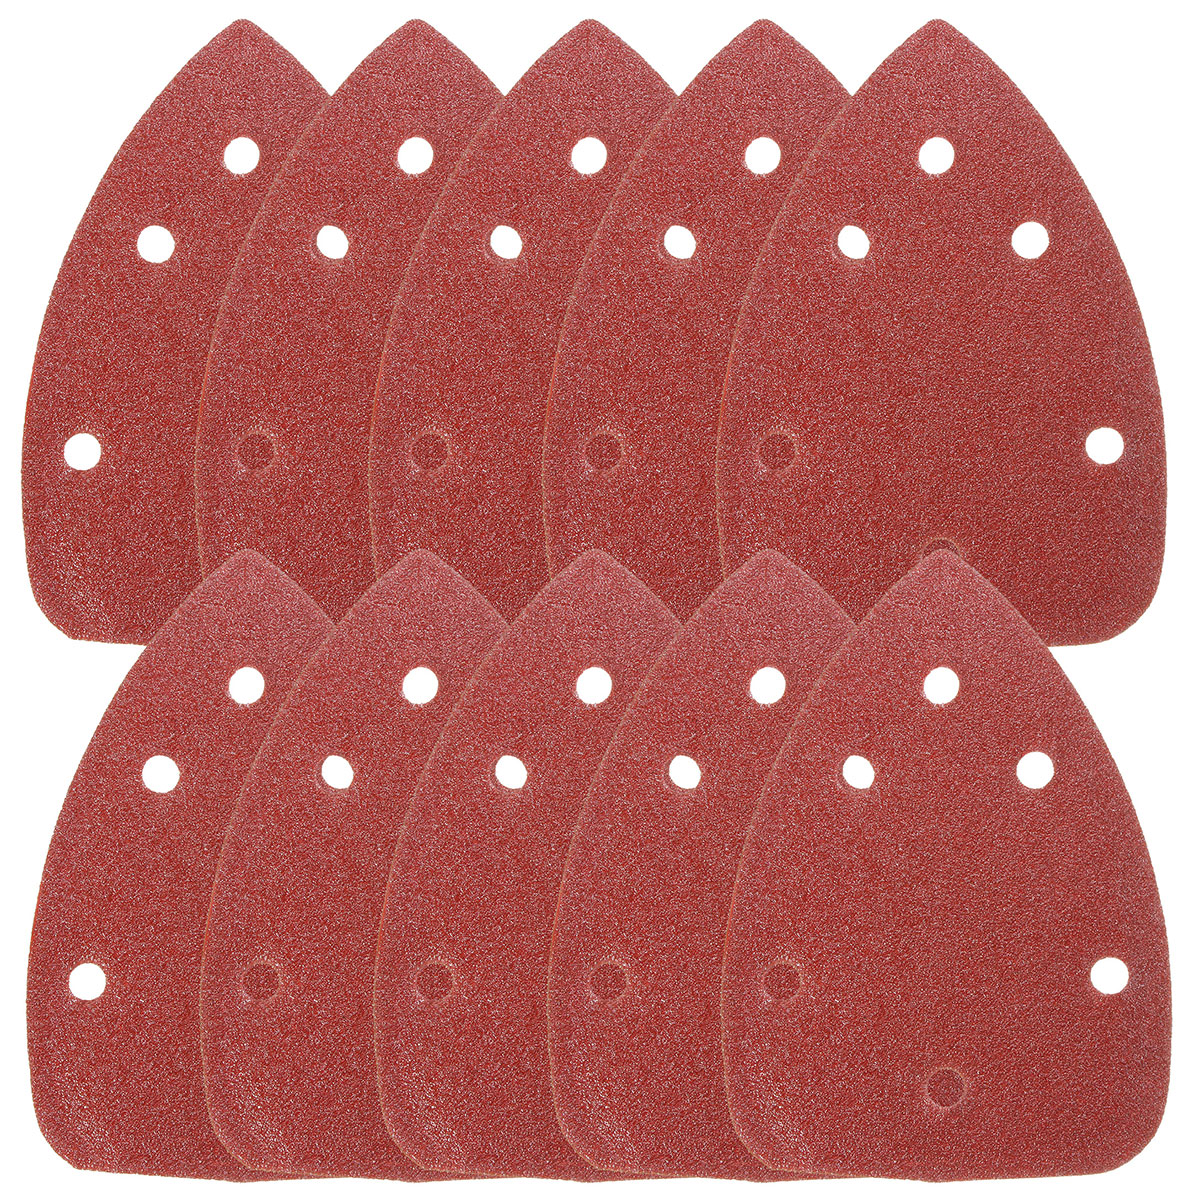 

10pcs 6 Holes 140mm Triangle Sandpaper Sanding Sheets Mouse Sander Discs